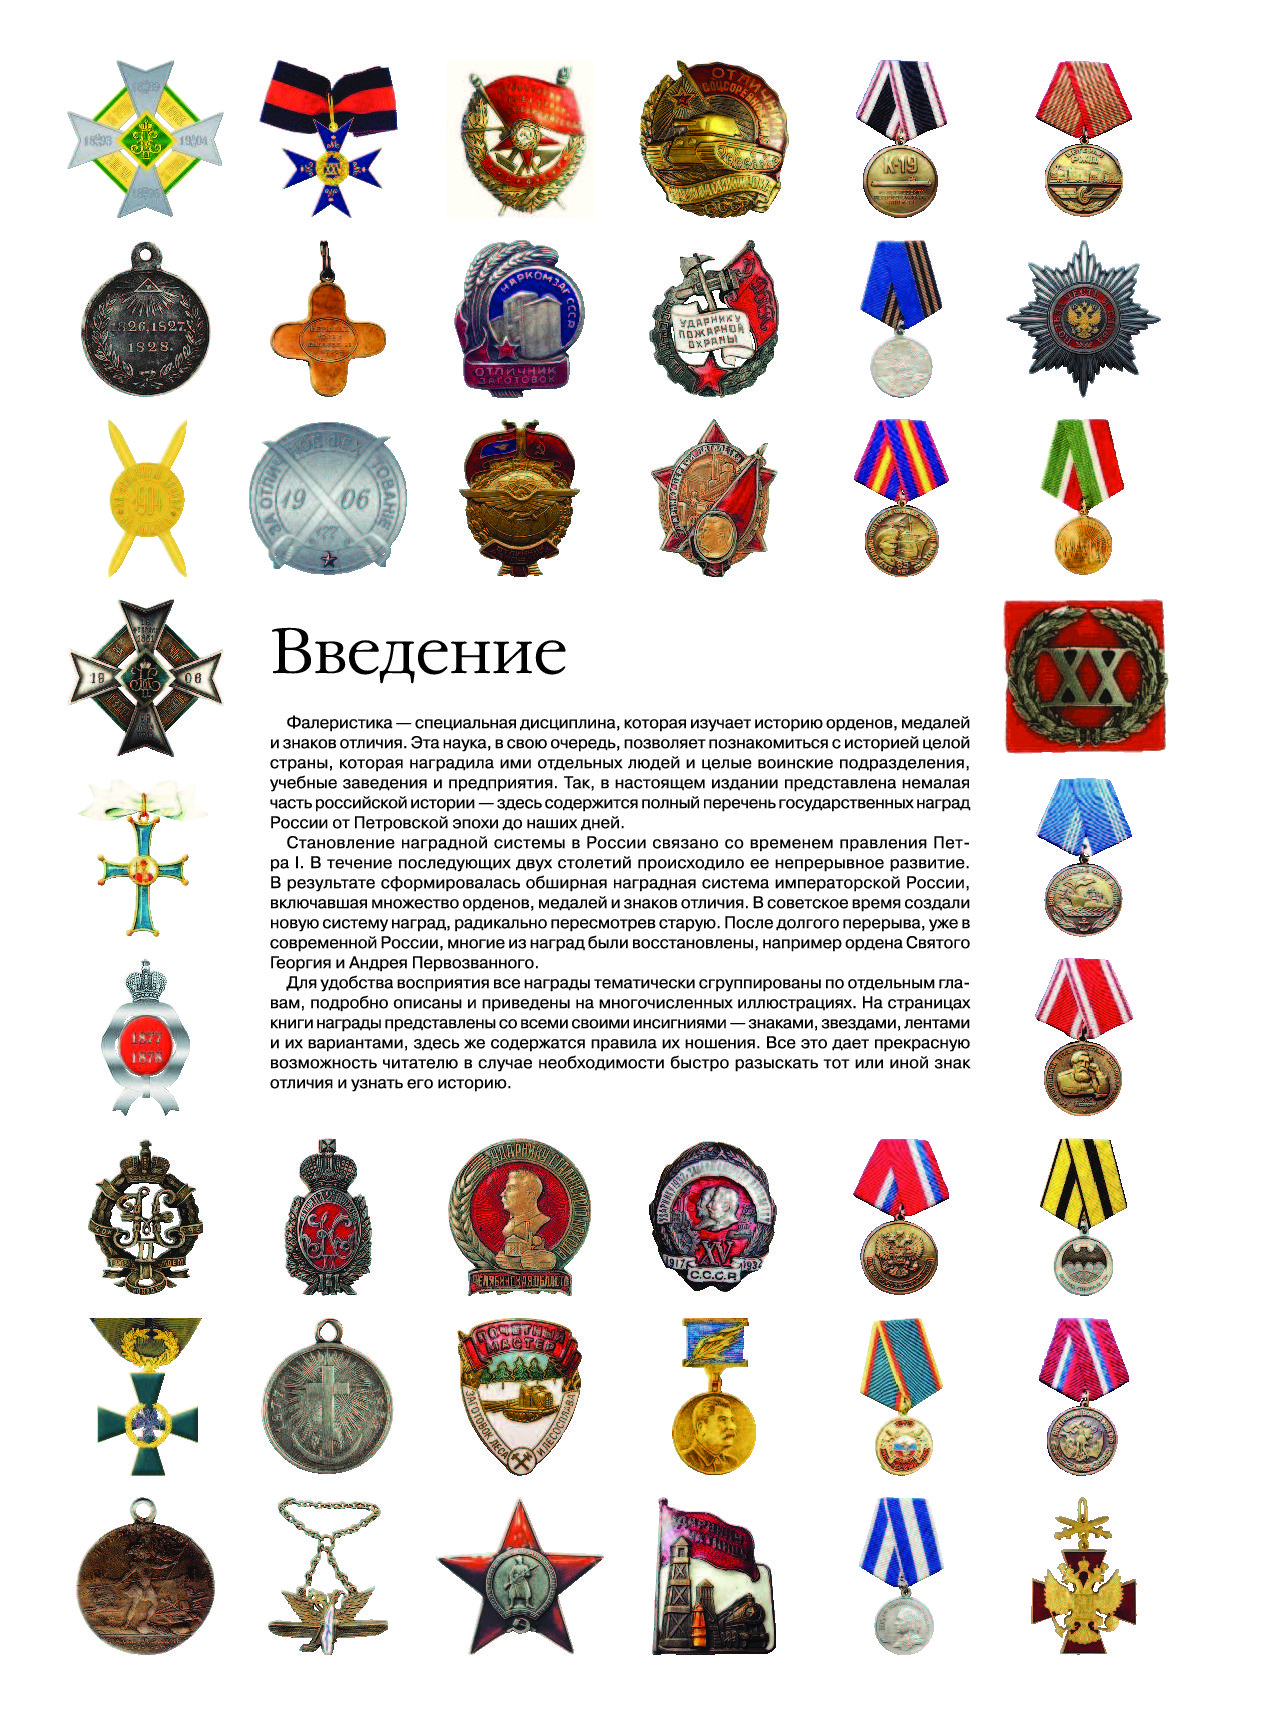 Ордена и медали современной россии по значимости фото и описание